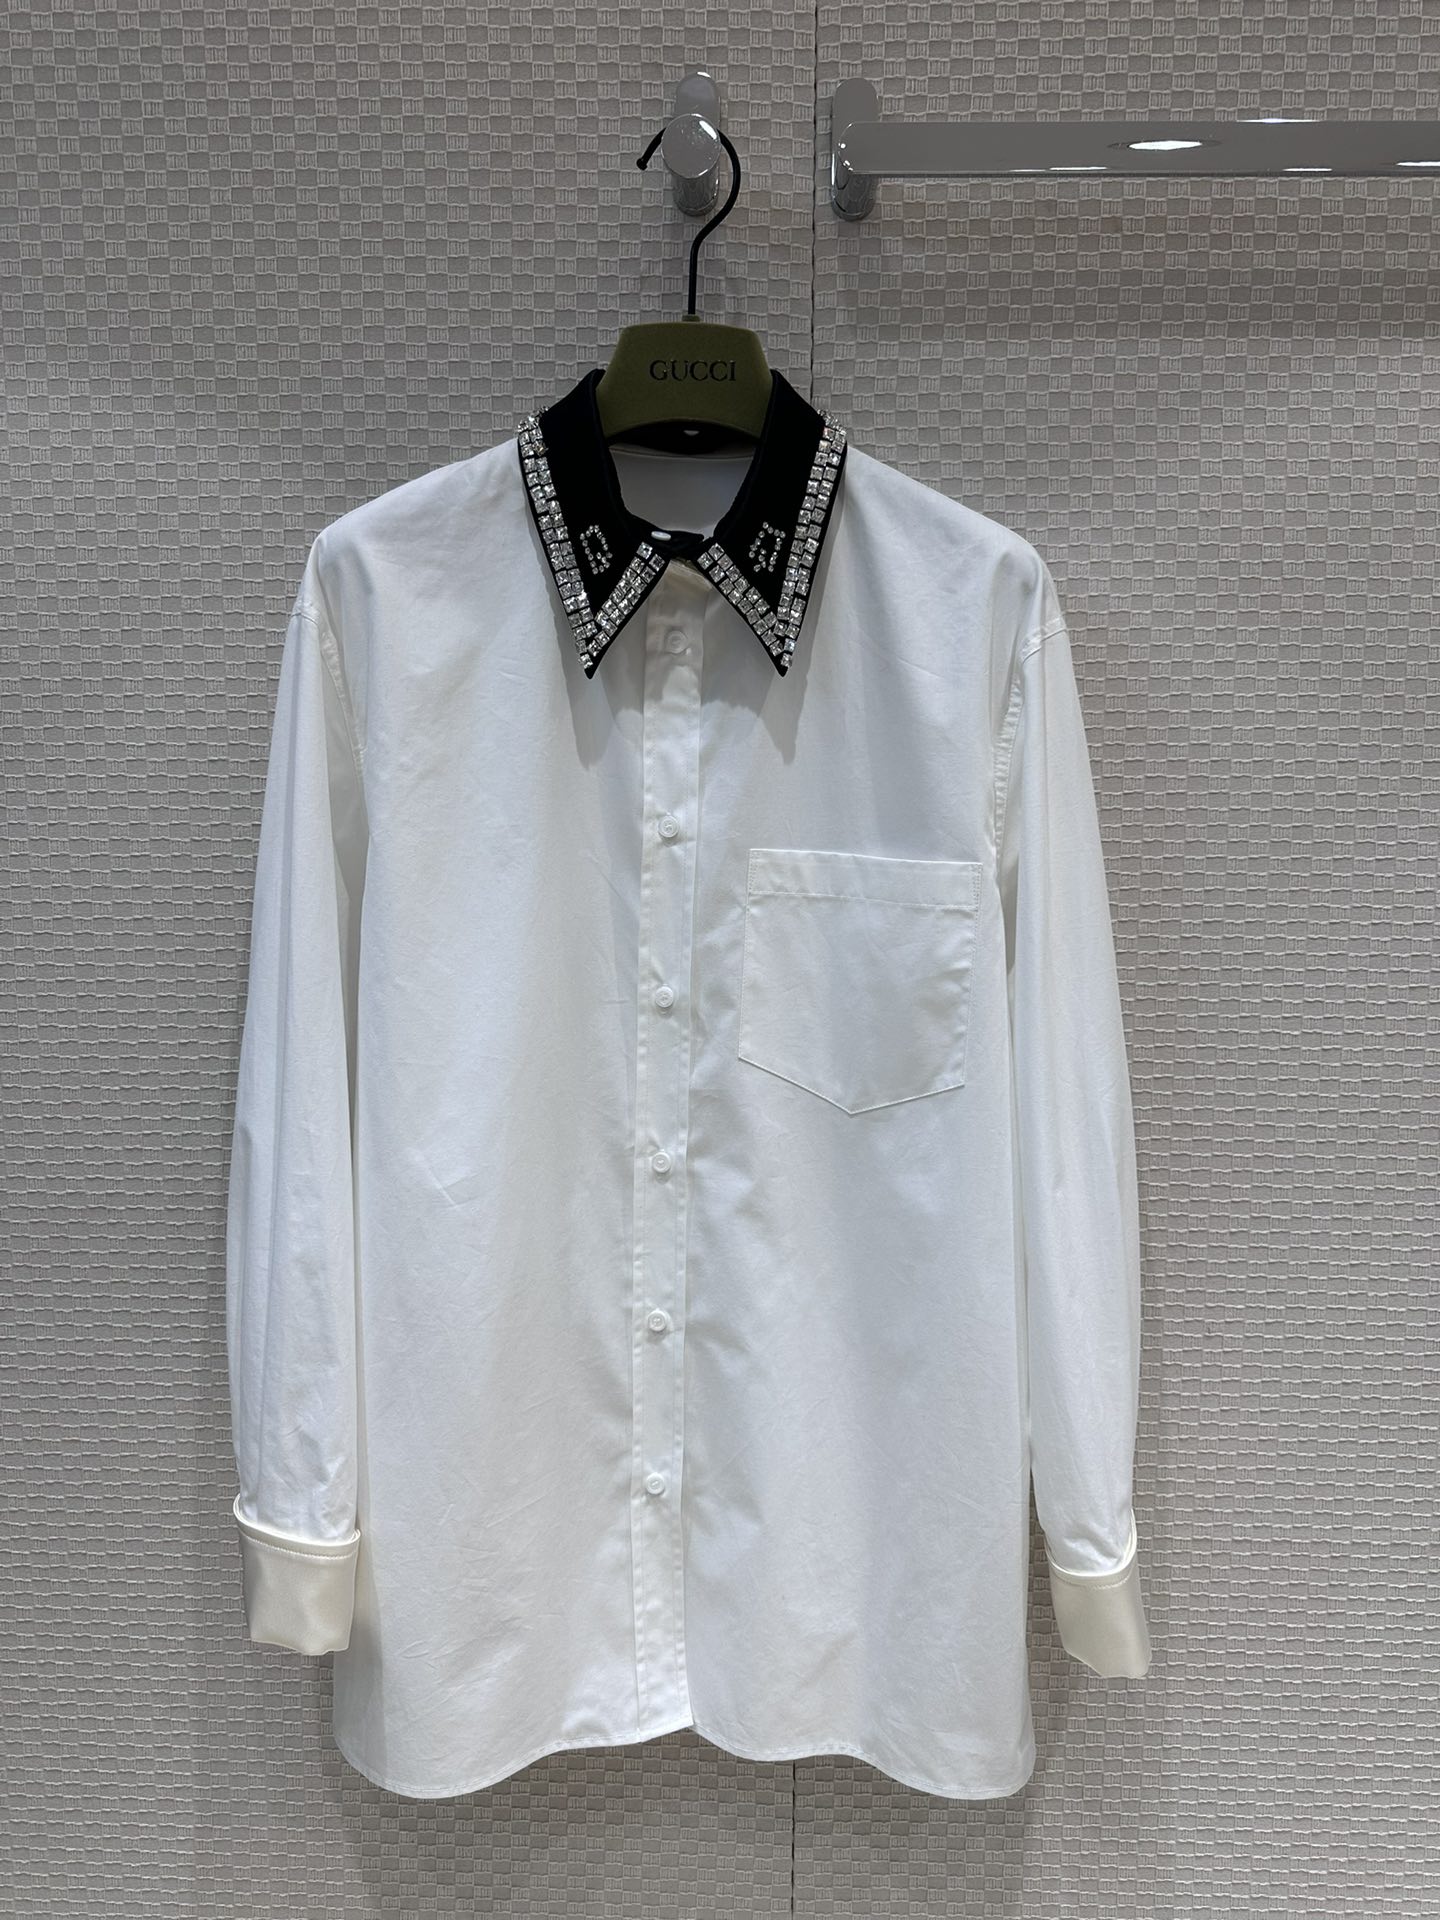 Gucci Odzież Koszule i bluzki Replig tanie z Chin
 Biały Szycie Wiosenna kolekcja Casual